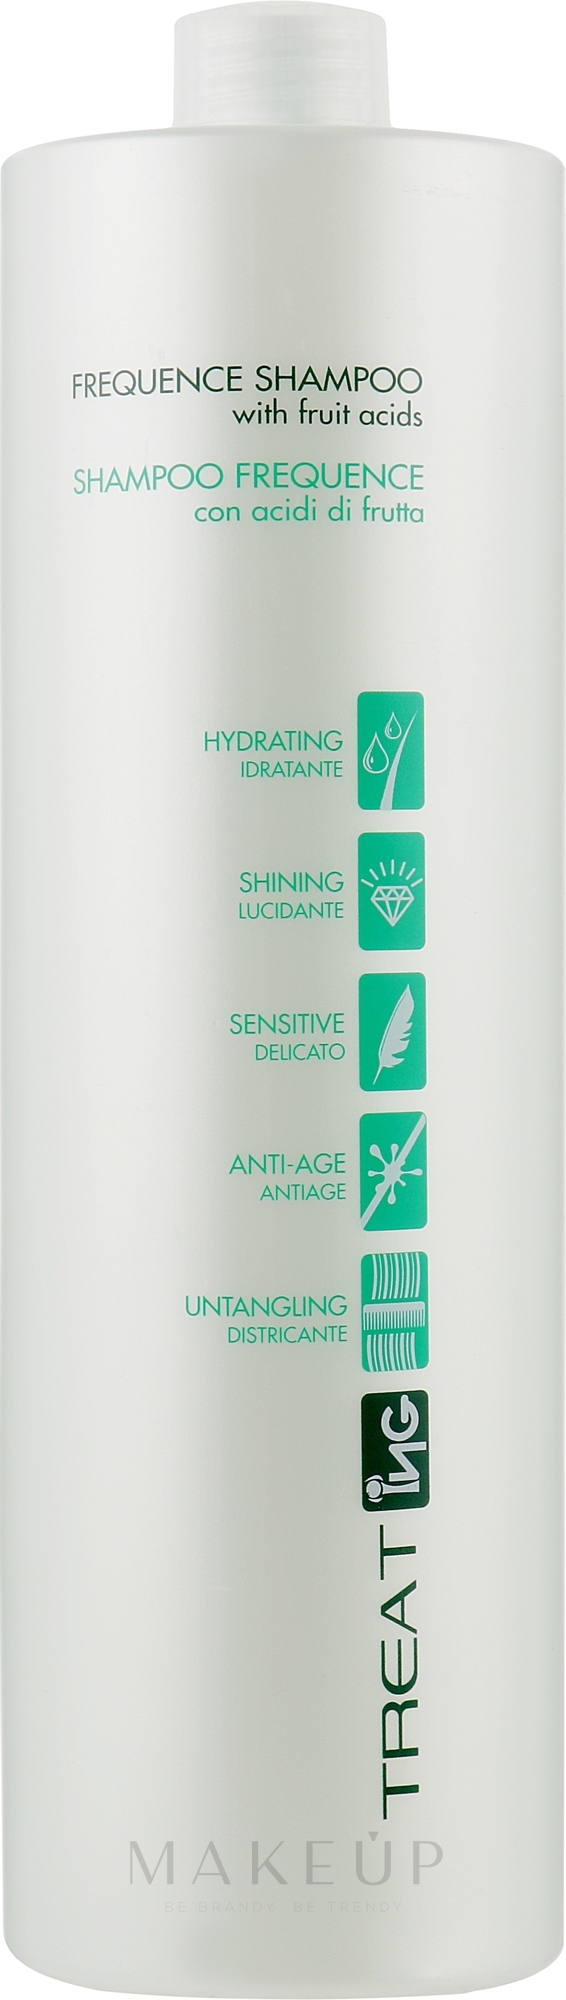 Mildes Basis-Shampoo für alle Haartypen - ING Professional Treat-ING Frequence Shampoo — Bild 1000 ml